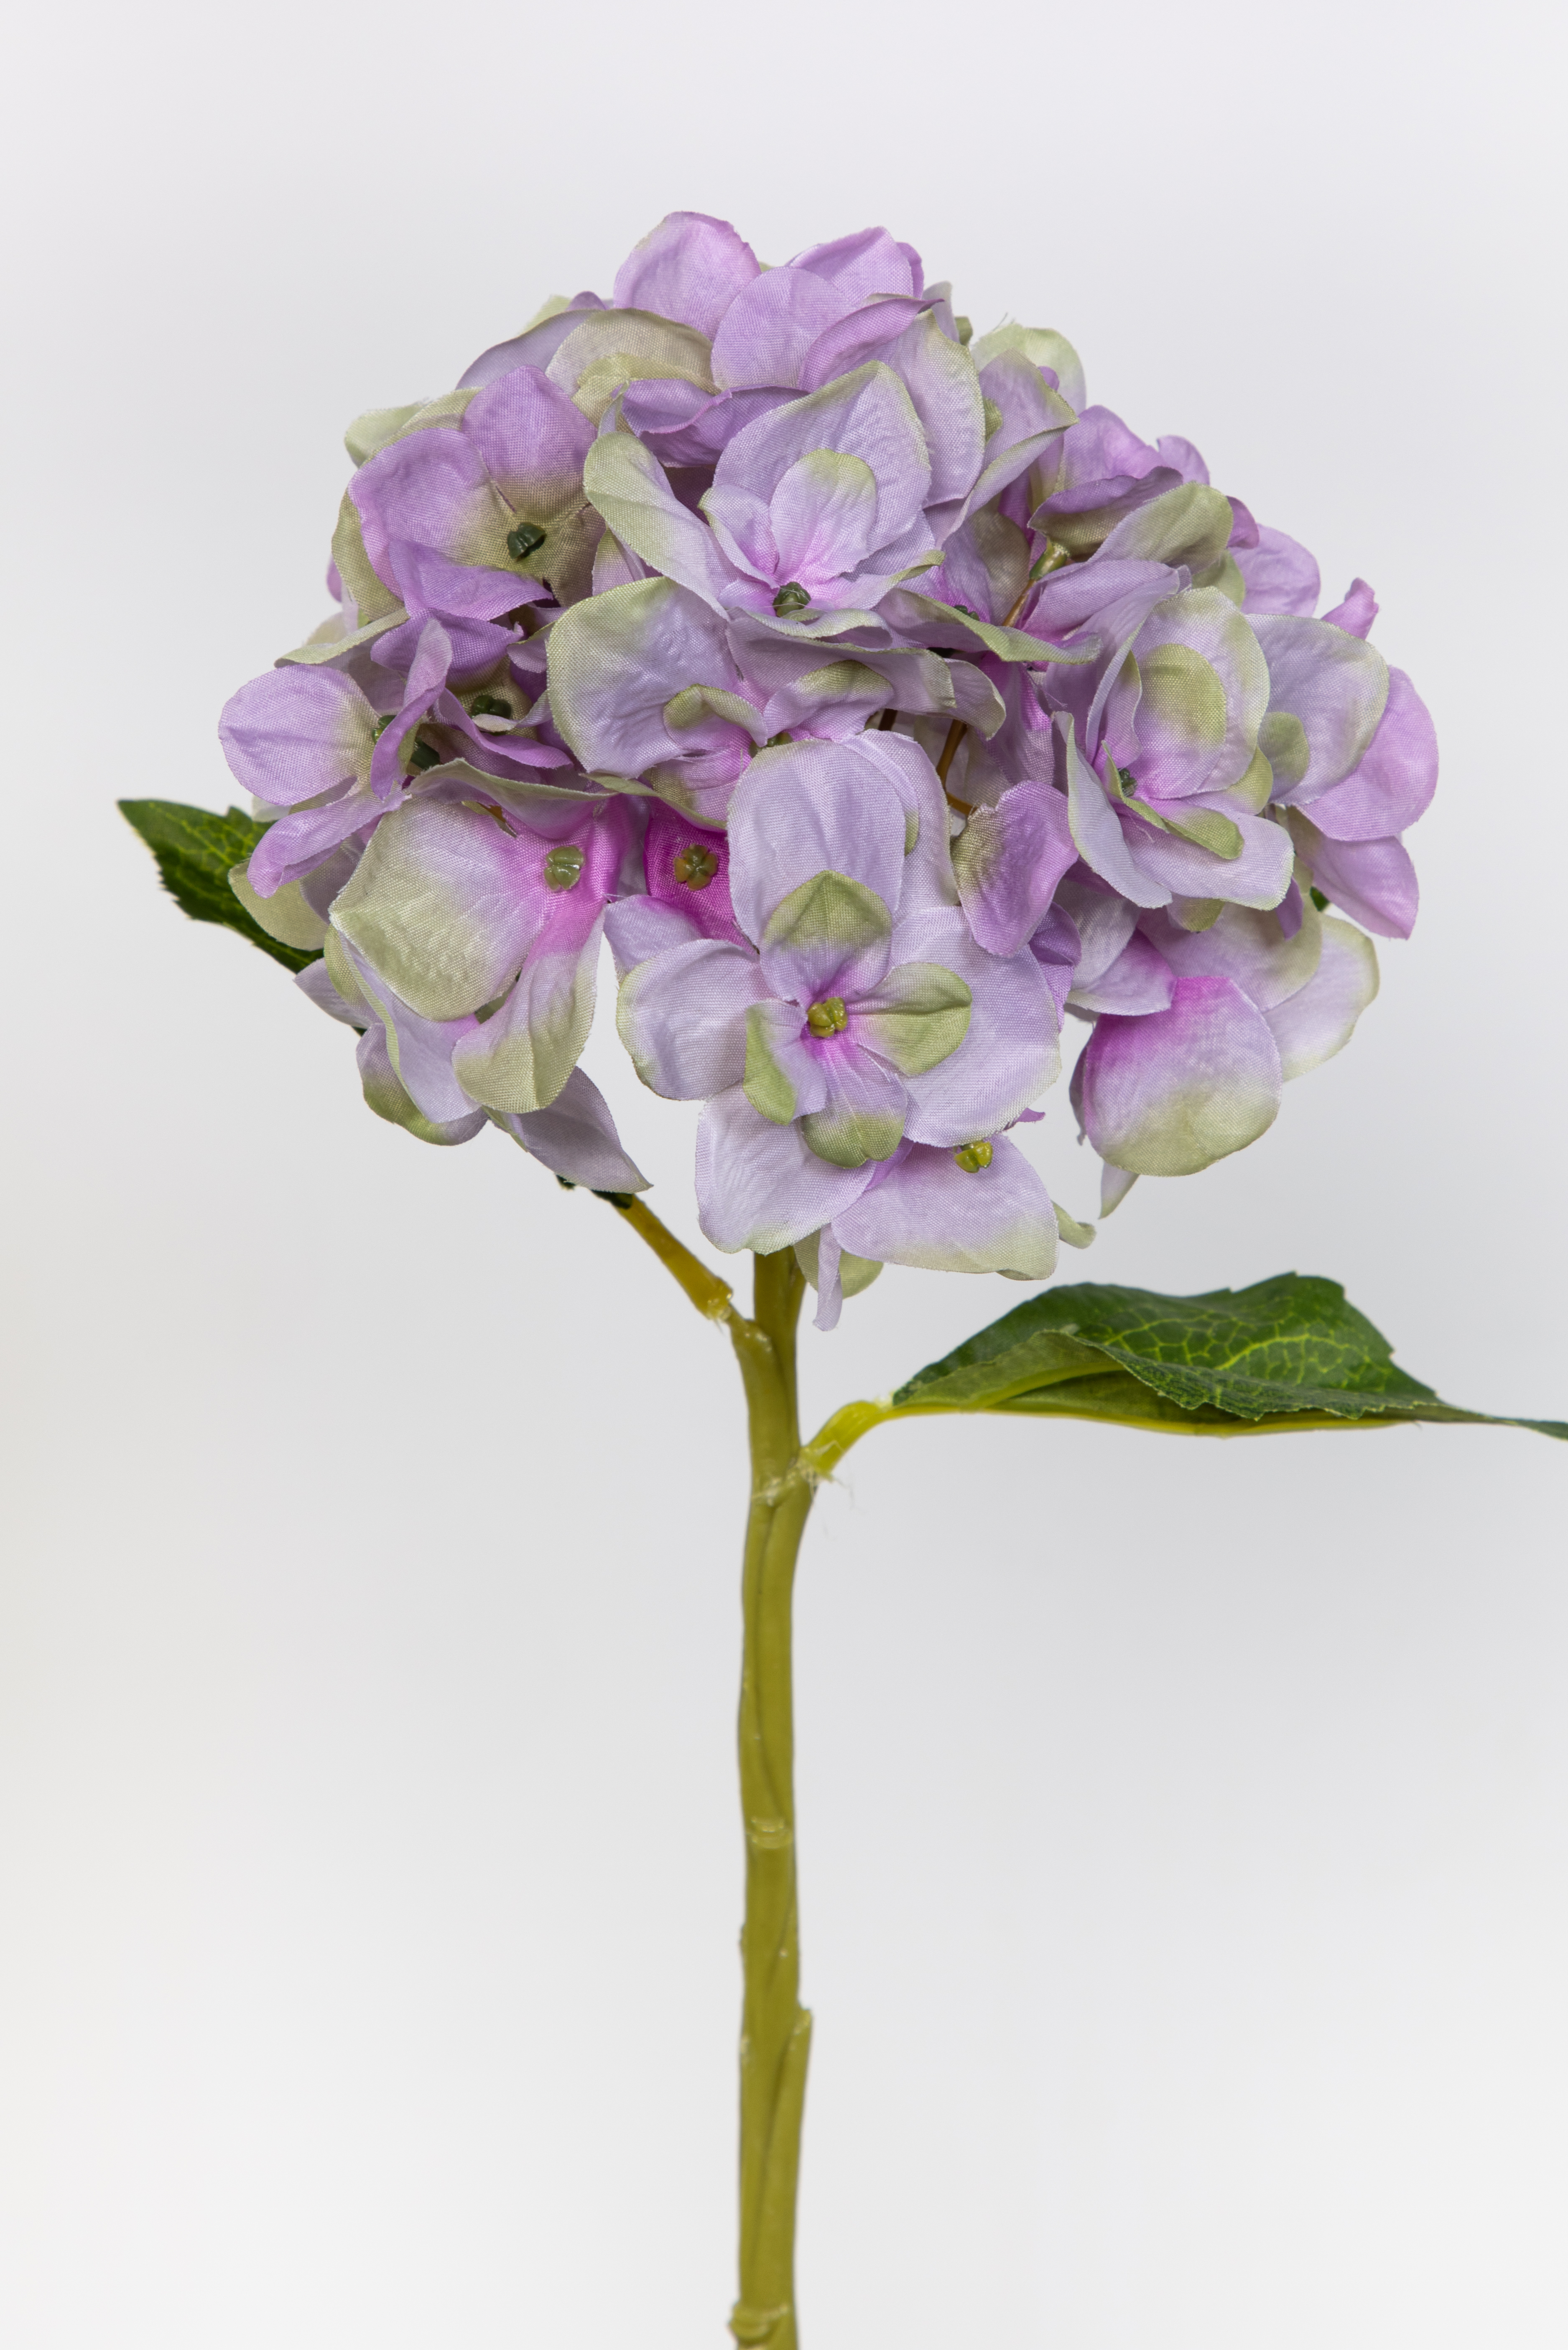 Hortensie Aqua 36cm helllila-grün FT Seidenblumen Kunstlbumen künstliche Blumen Hortensien